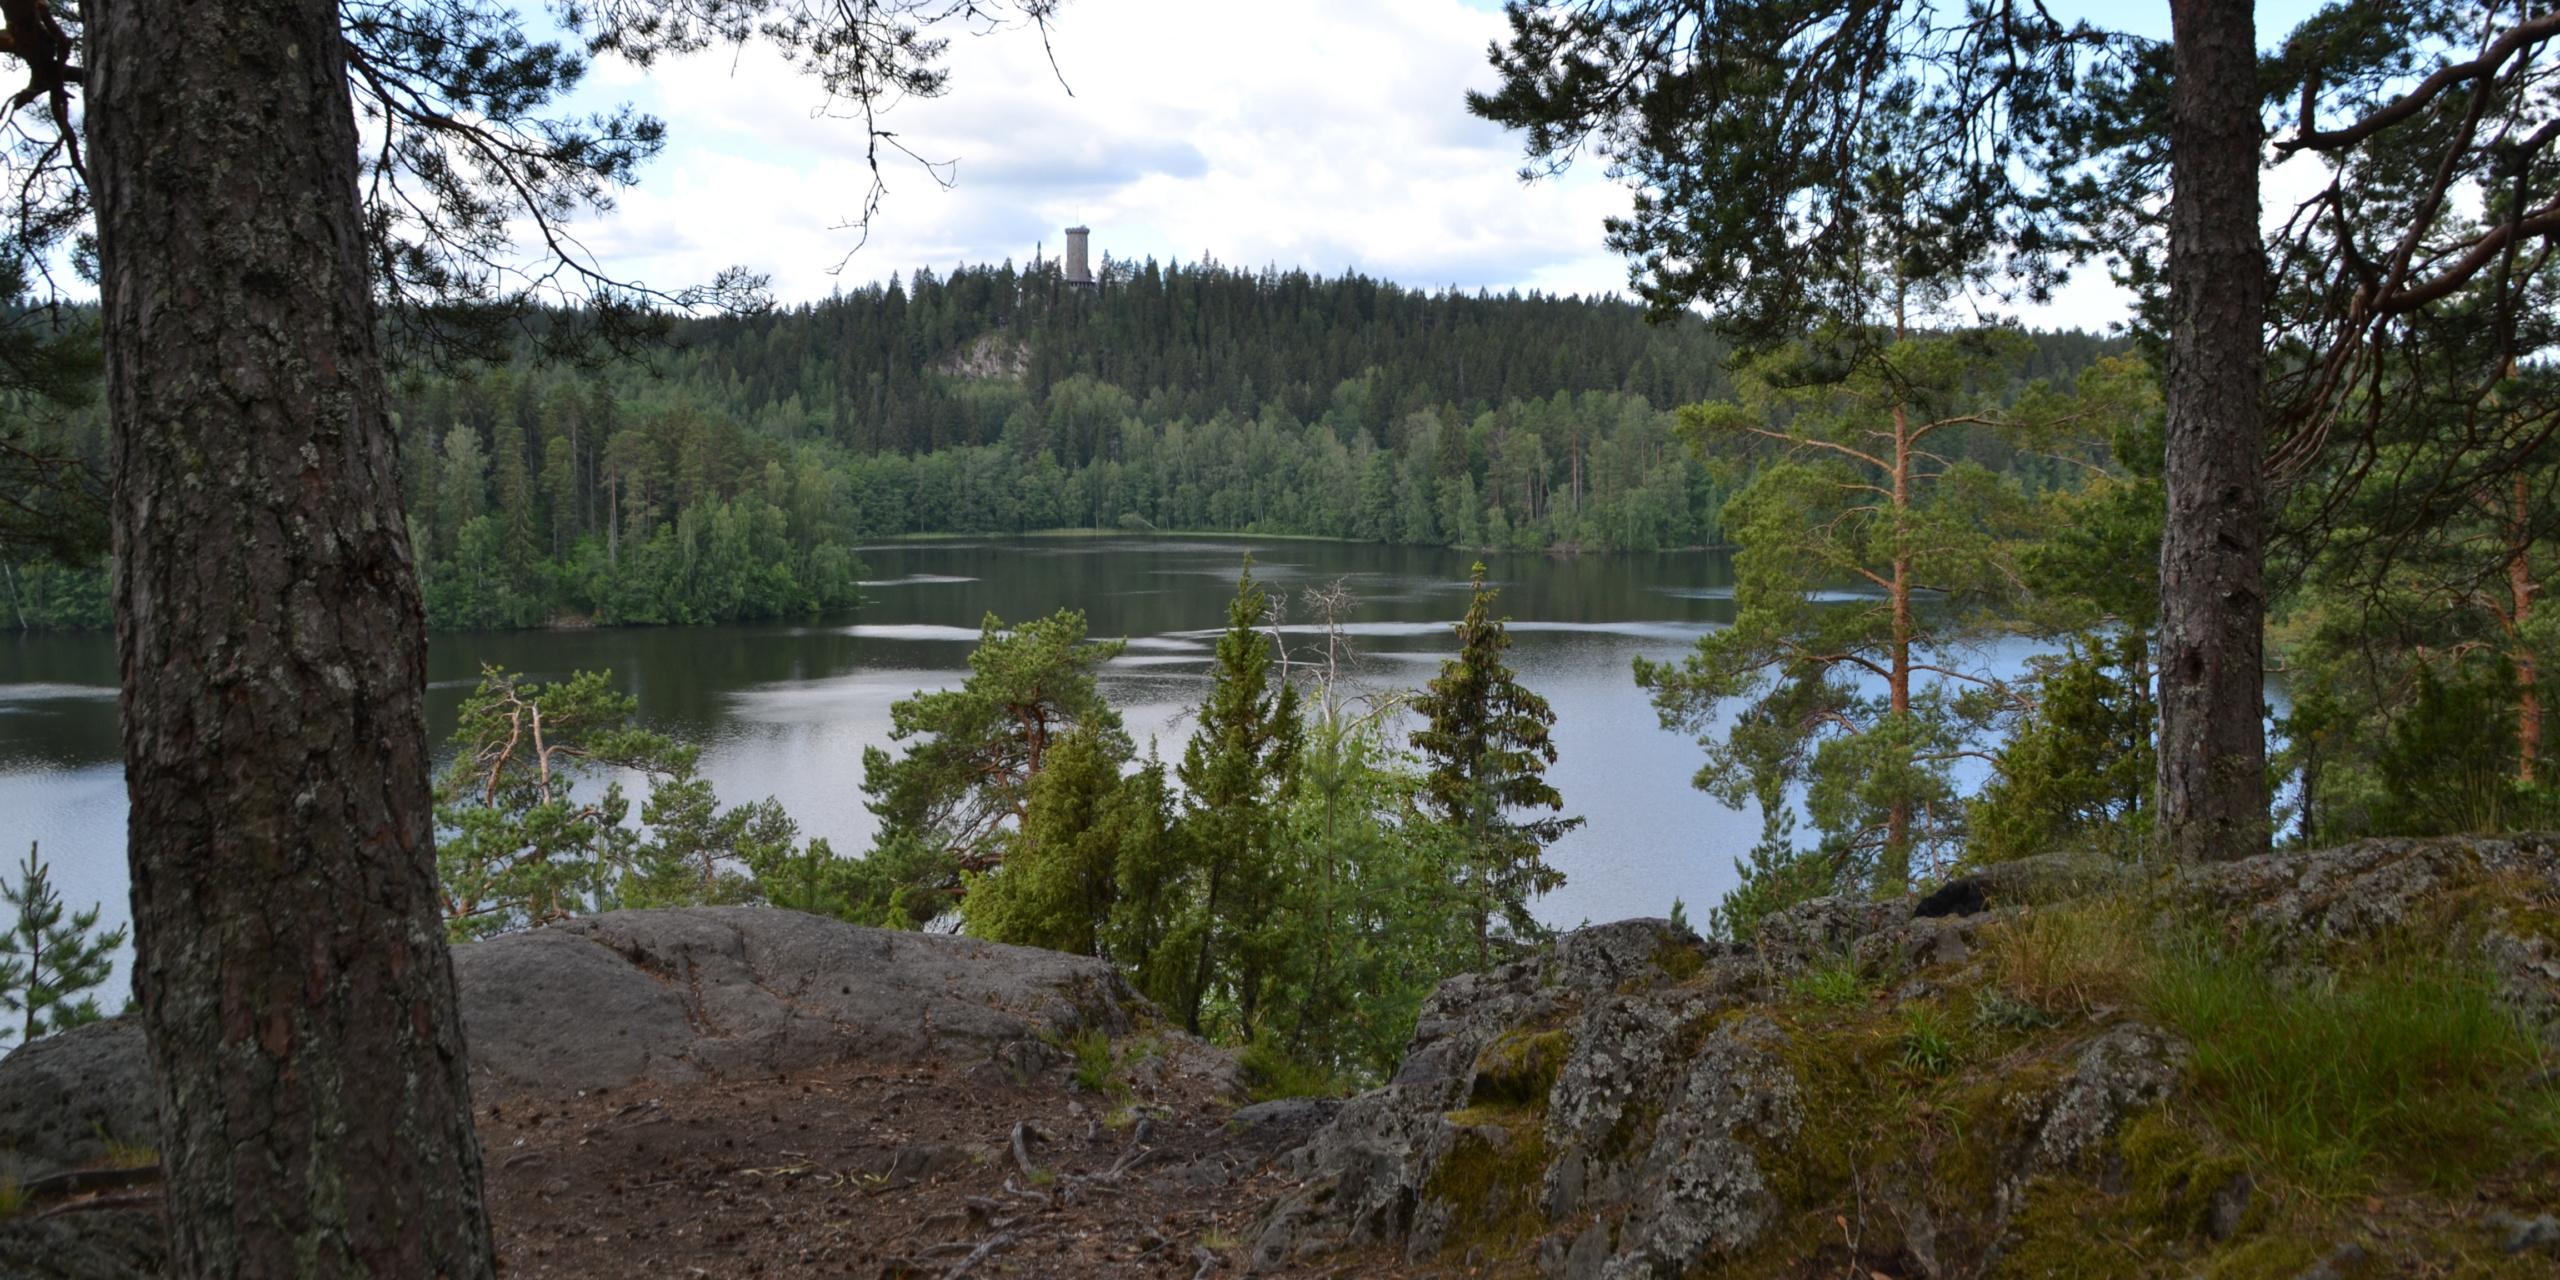 Kesäinen näkymä Sibeliuksen metsän Kärmeskalliolta Aulangonjärven yli kohti horisontissa olevaa Aulangon puistoa ja näkötornia.